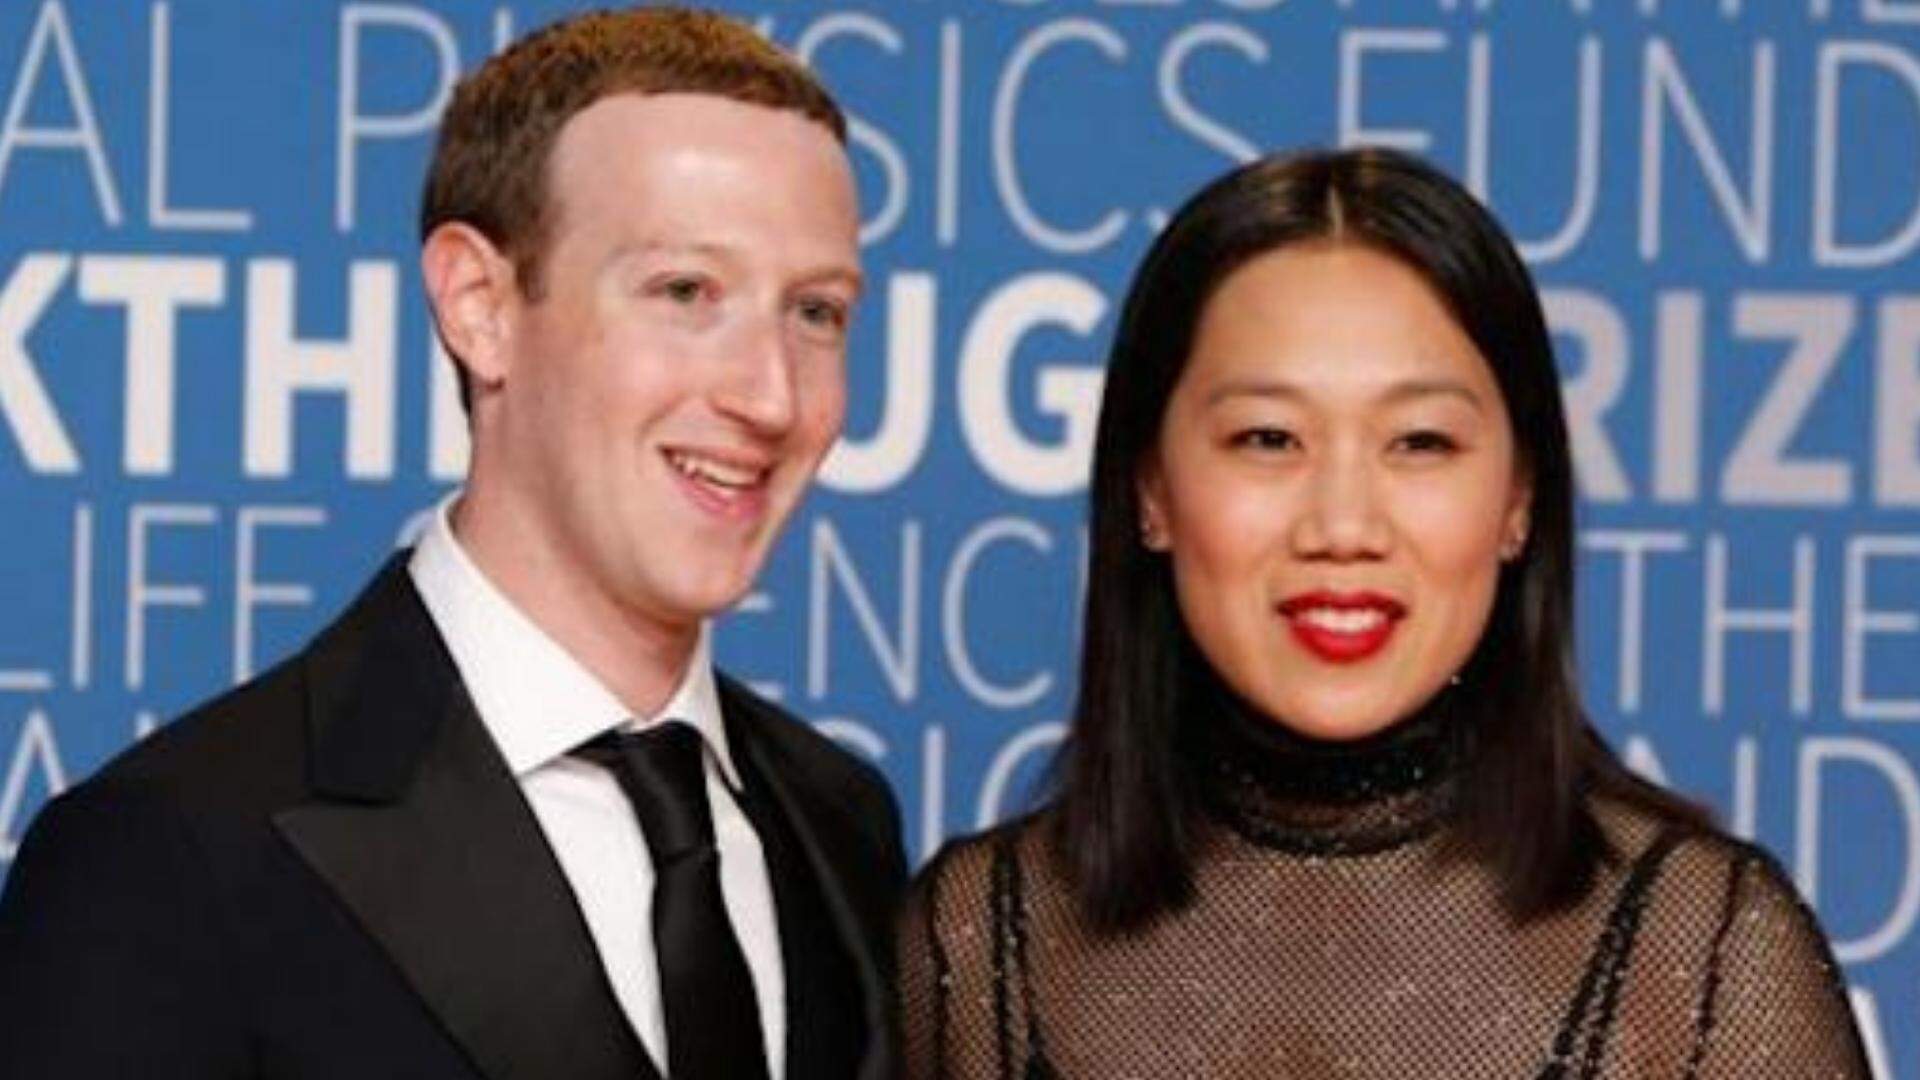 Cegonha a todo vapor! Mark Zuckerberg anuncia gravidez de sua esposa - Metropolitana FM